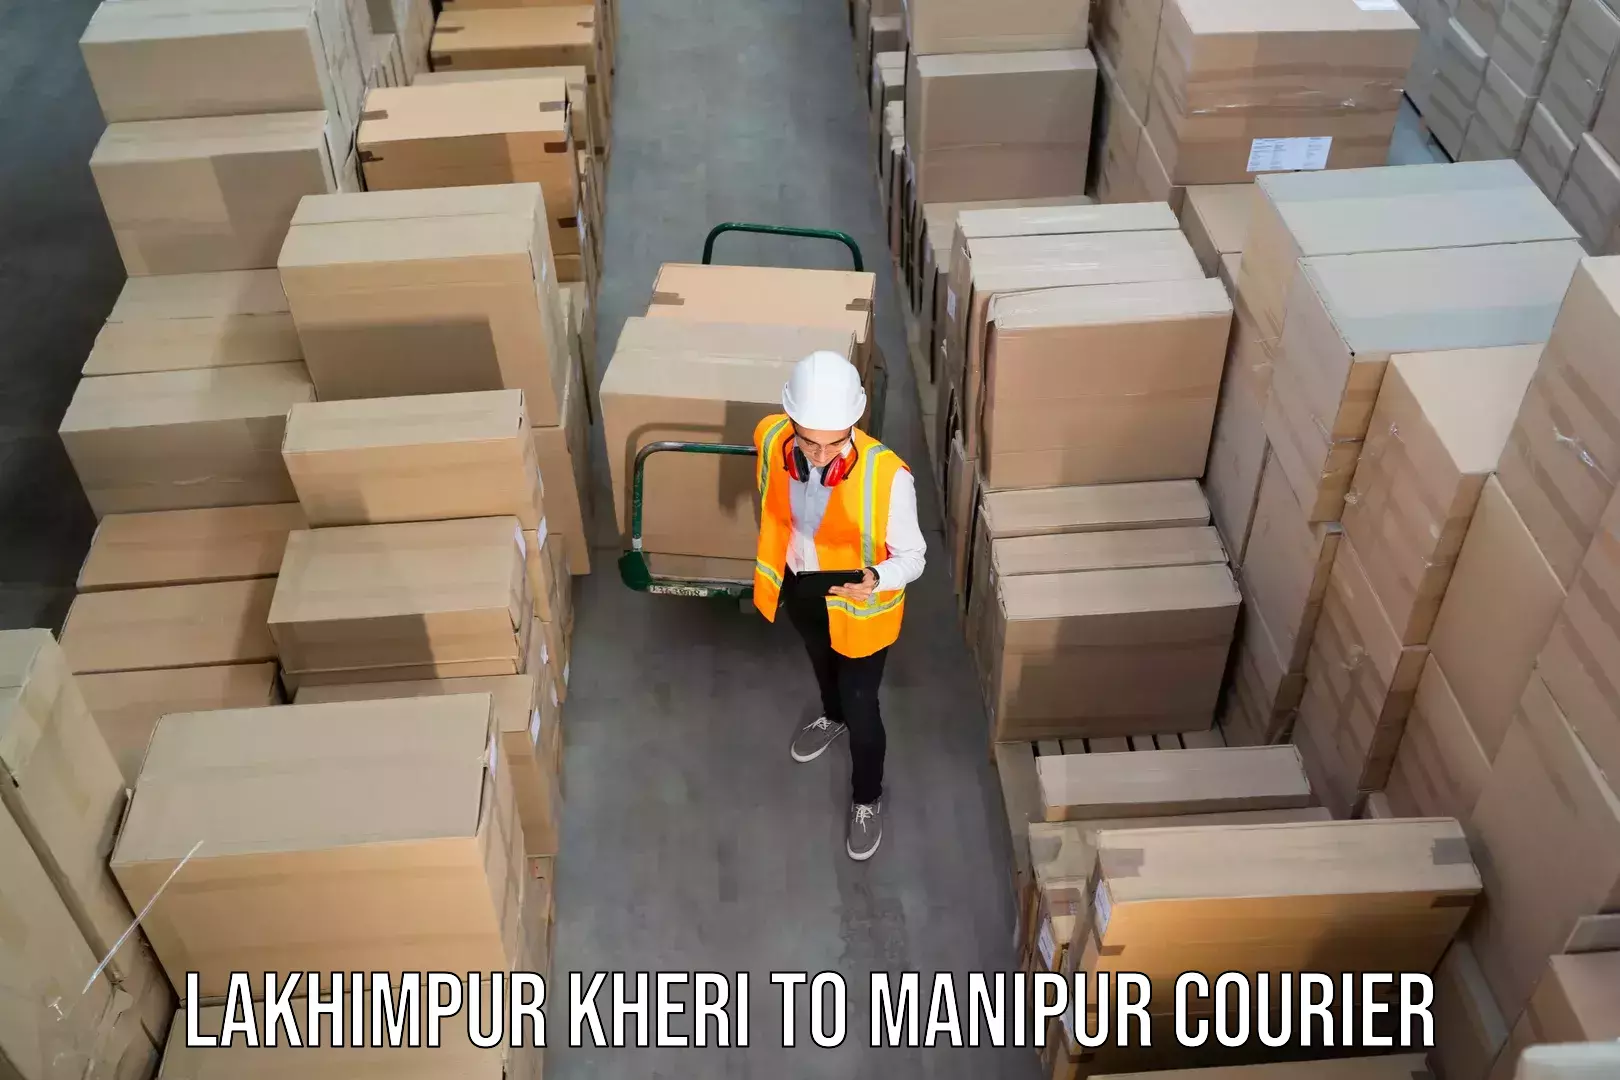 High-speed parcel service Lakhimpur Kheri to Jiribam